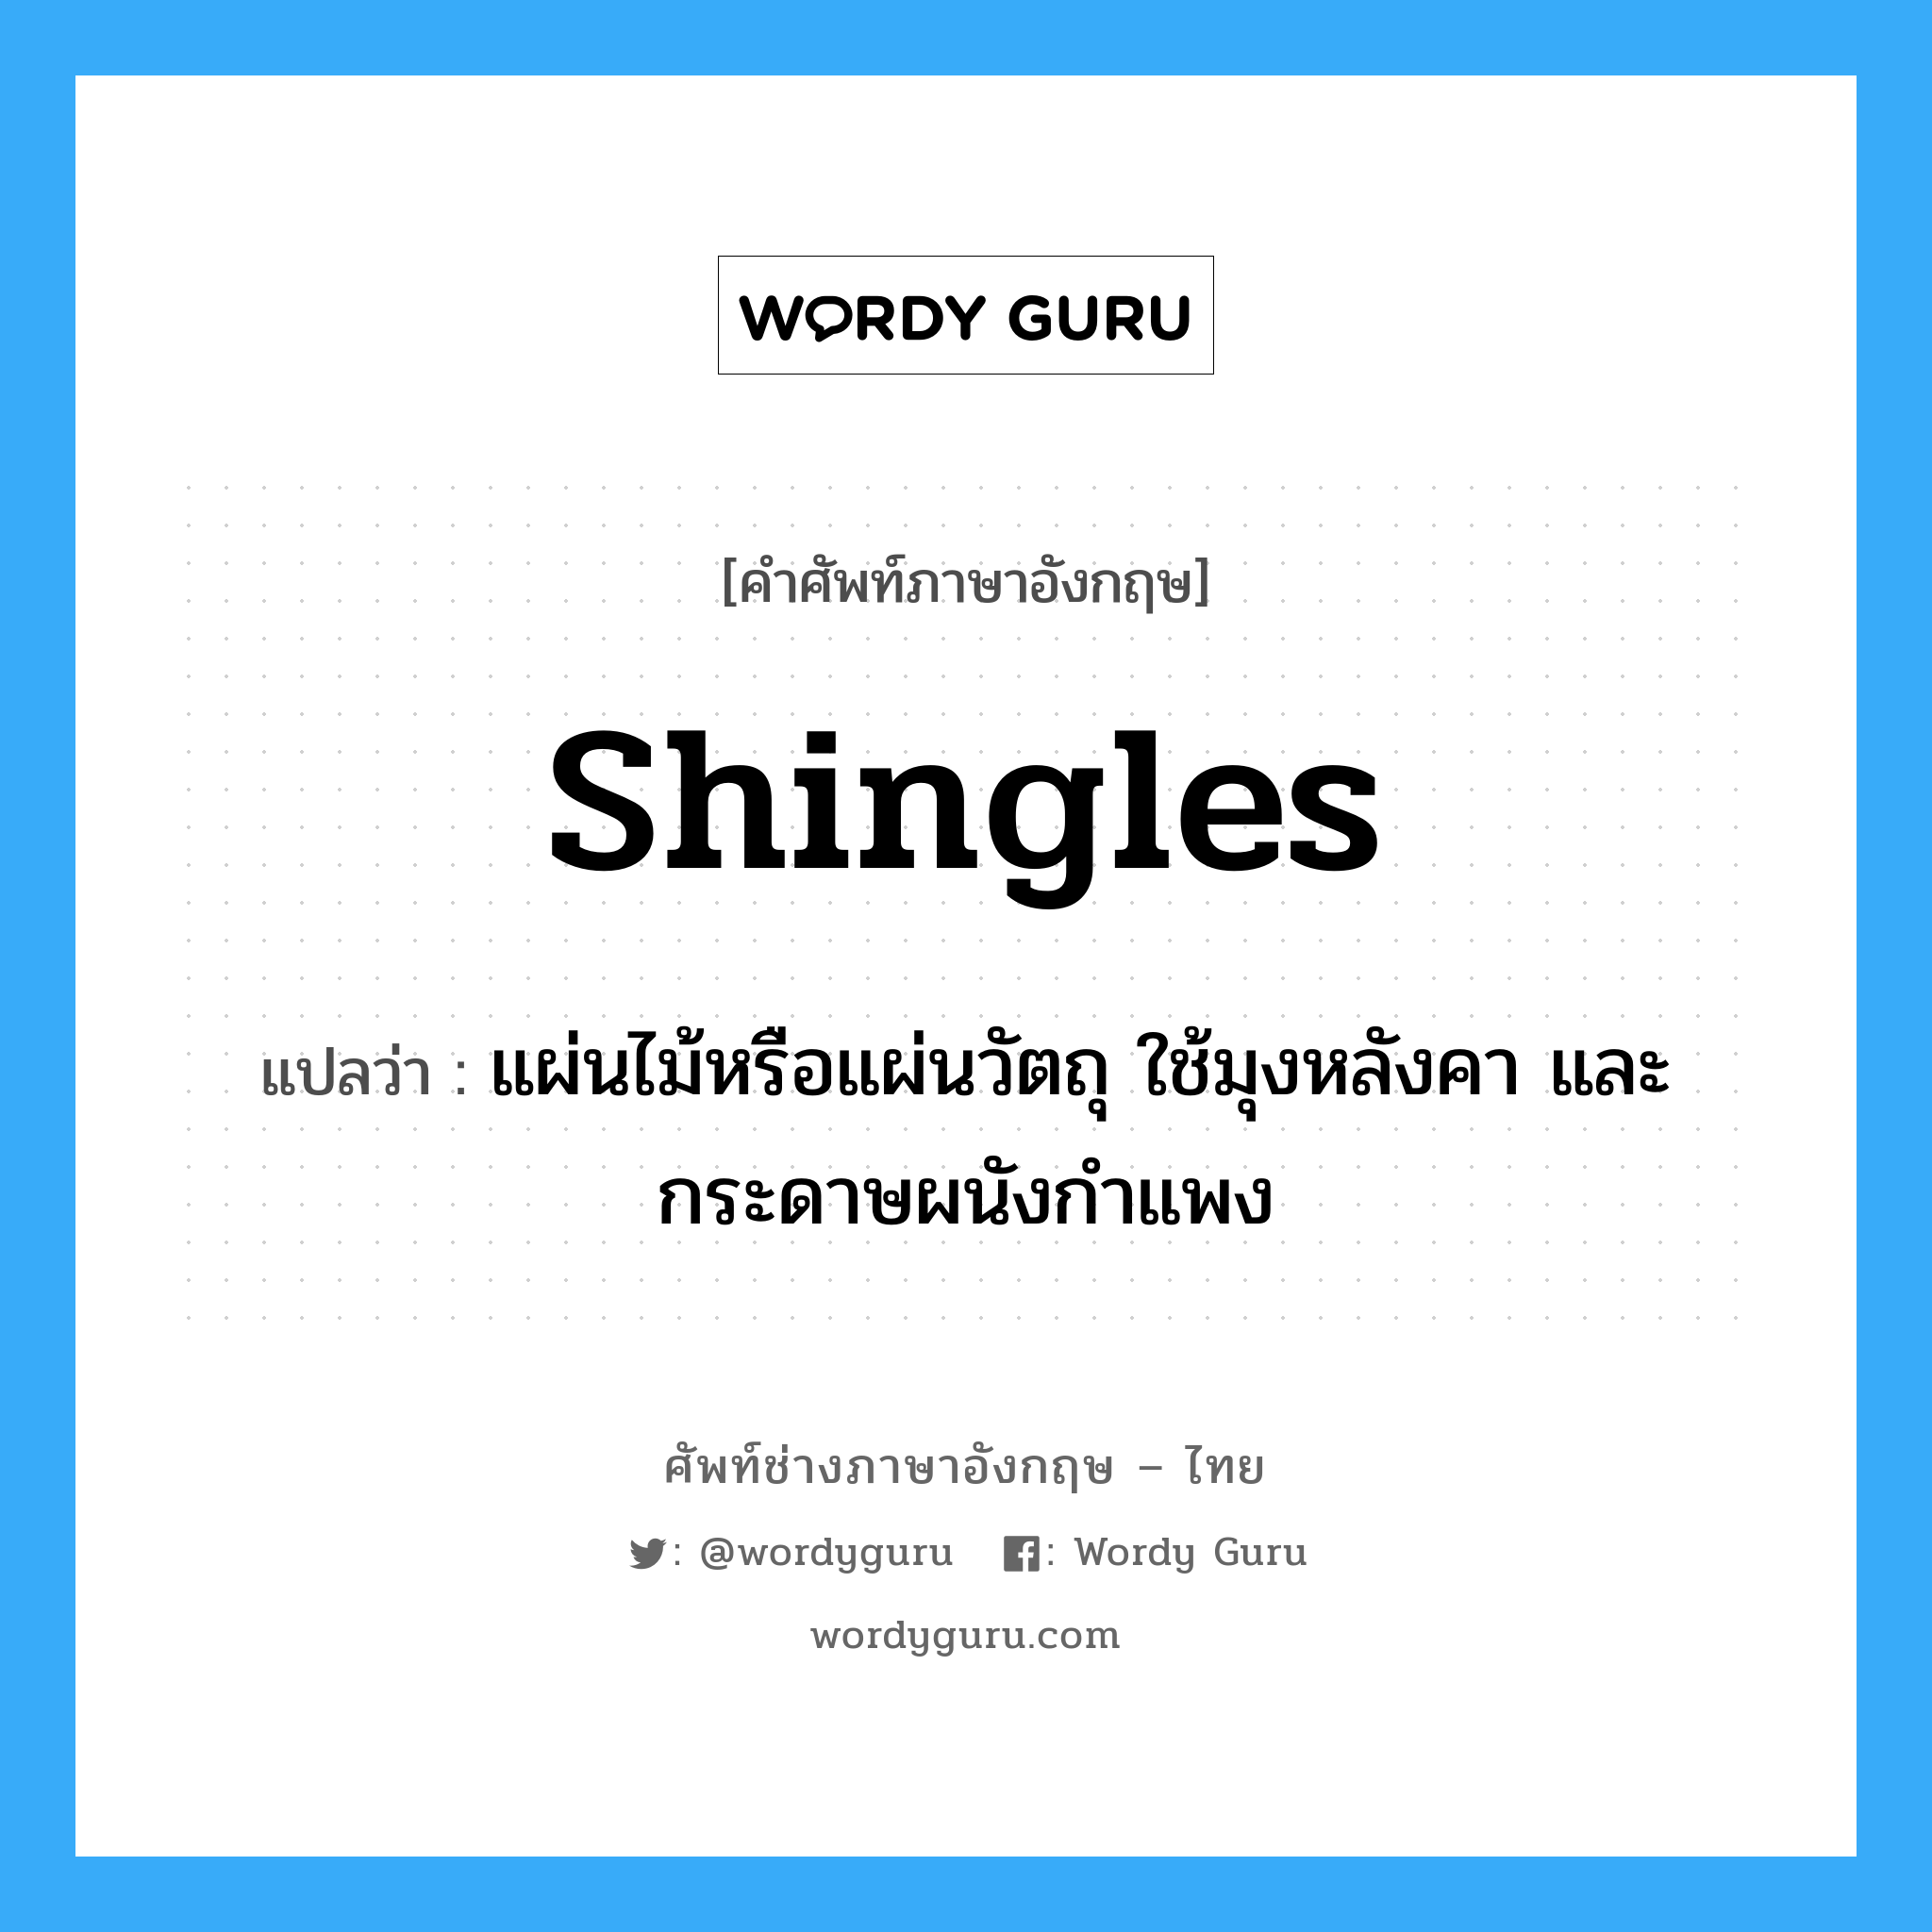 shingles แปลว่า?, คำศัพท์ช่างภาษาอังกฤษ - ไทย shingles คำศัพท์ภาษาอังกฤษ shingles แปลว่า แผ่นไม้หรือแผ่นวัตถุ ใช้มุงหลังคา และกระดาษผนังกำแพง